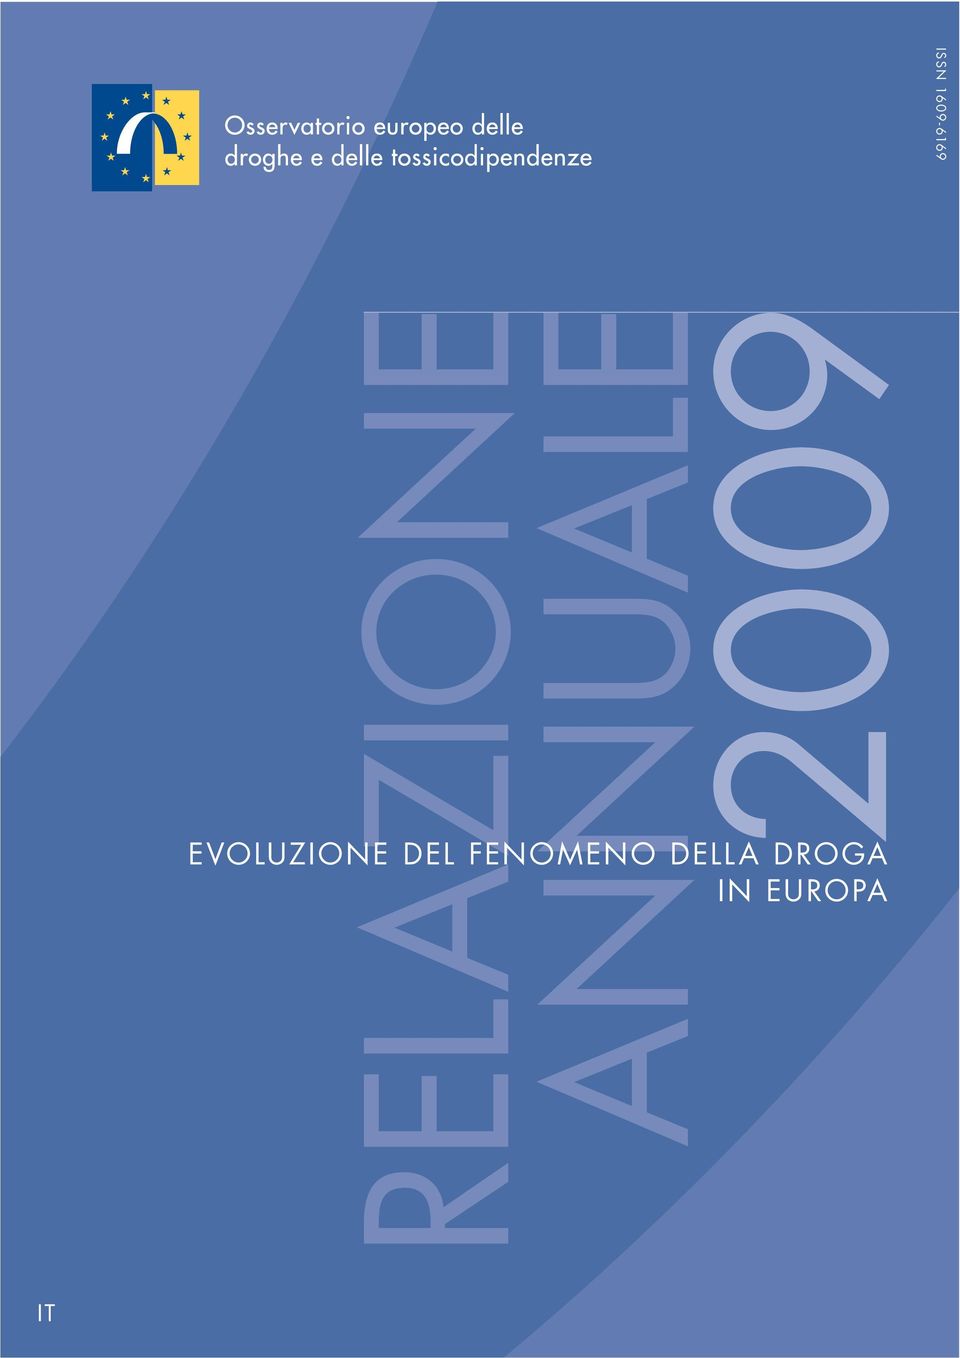 2009 EVOLUZIONE DEL